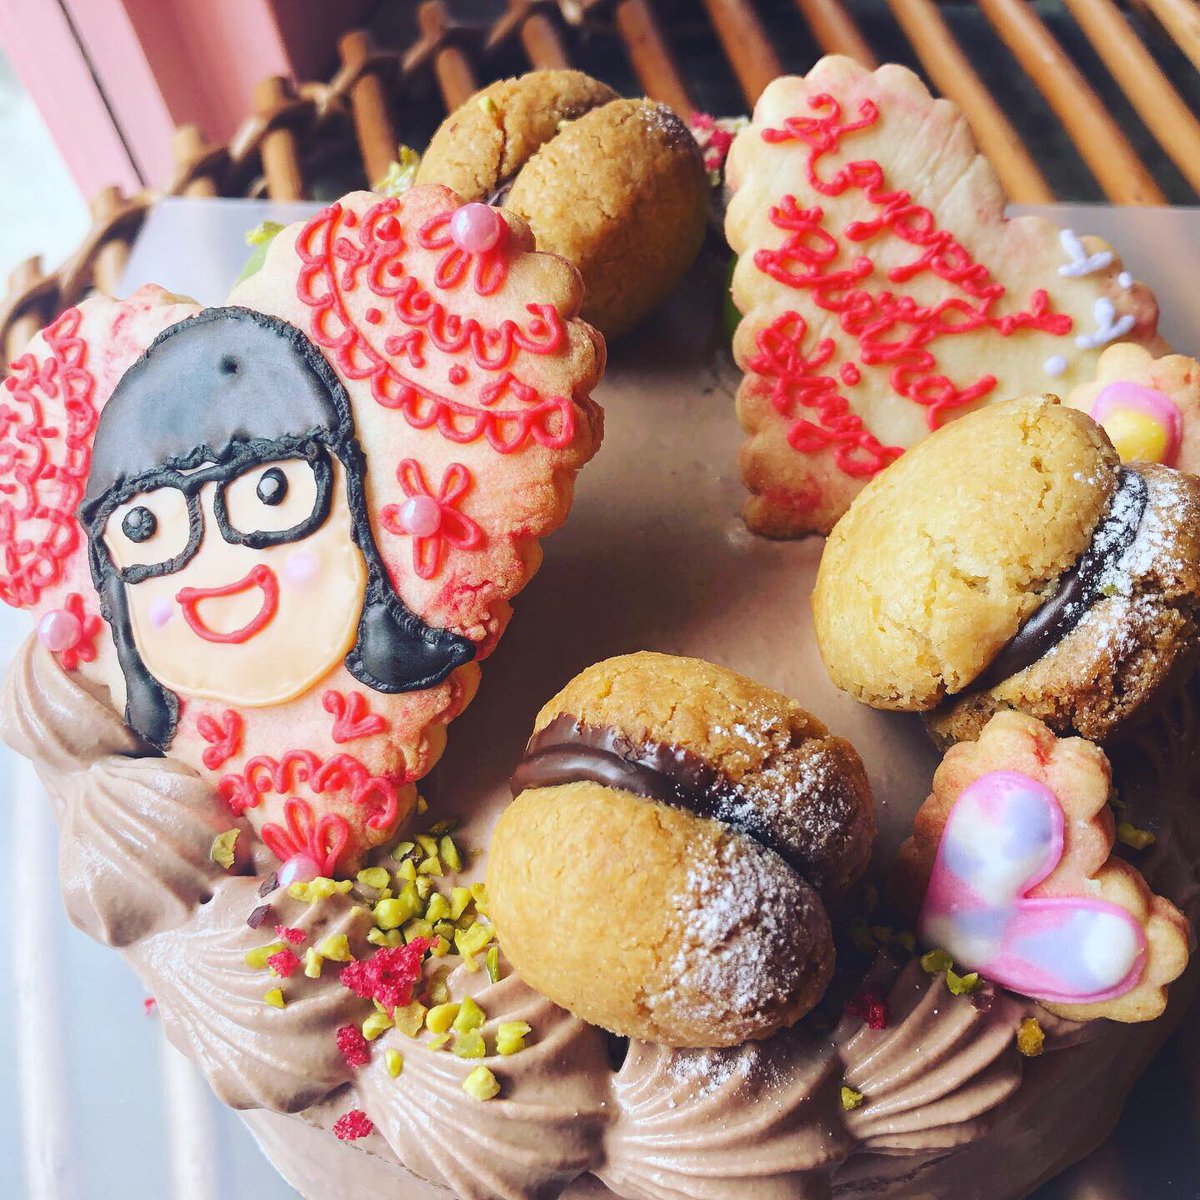 Ryoko オーダーメイド 誕生日ケーキをシャインマスカットのイタリアンショコラショートケーキでお作りさせて頂きました パティスリー カフェ ルサブロンバイリョウコ 似顔絵 アイシングクッキー 誕生日ケーキ バースデーケーキ イタリアン